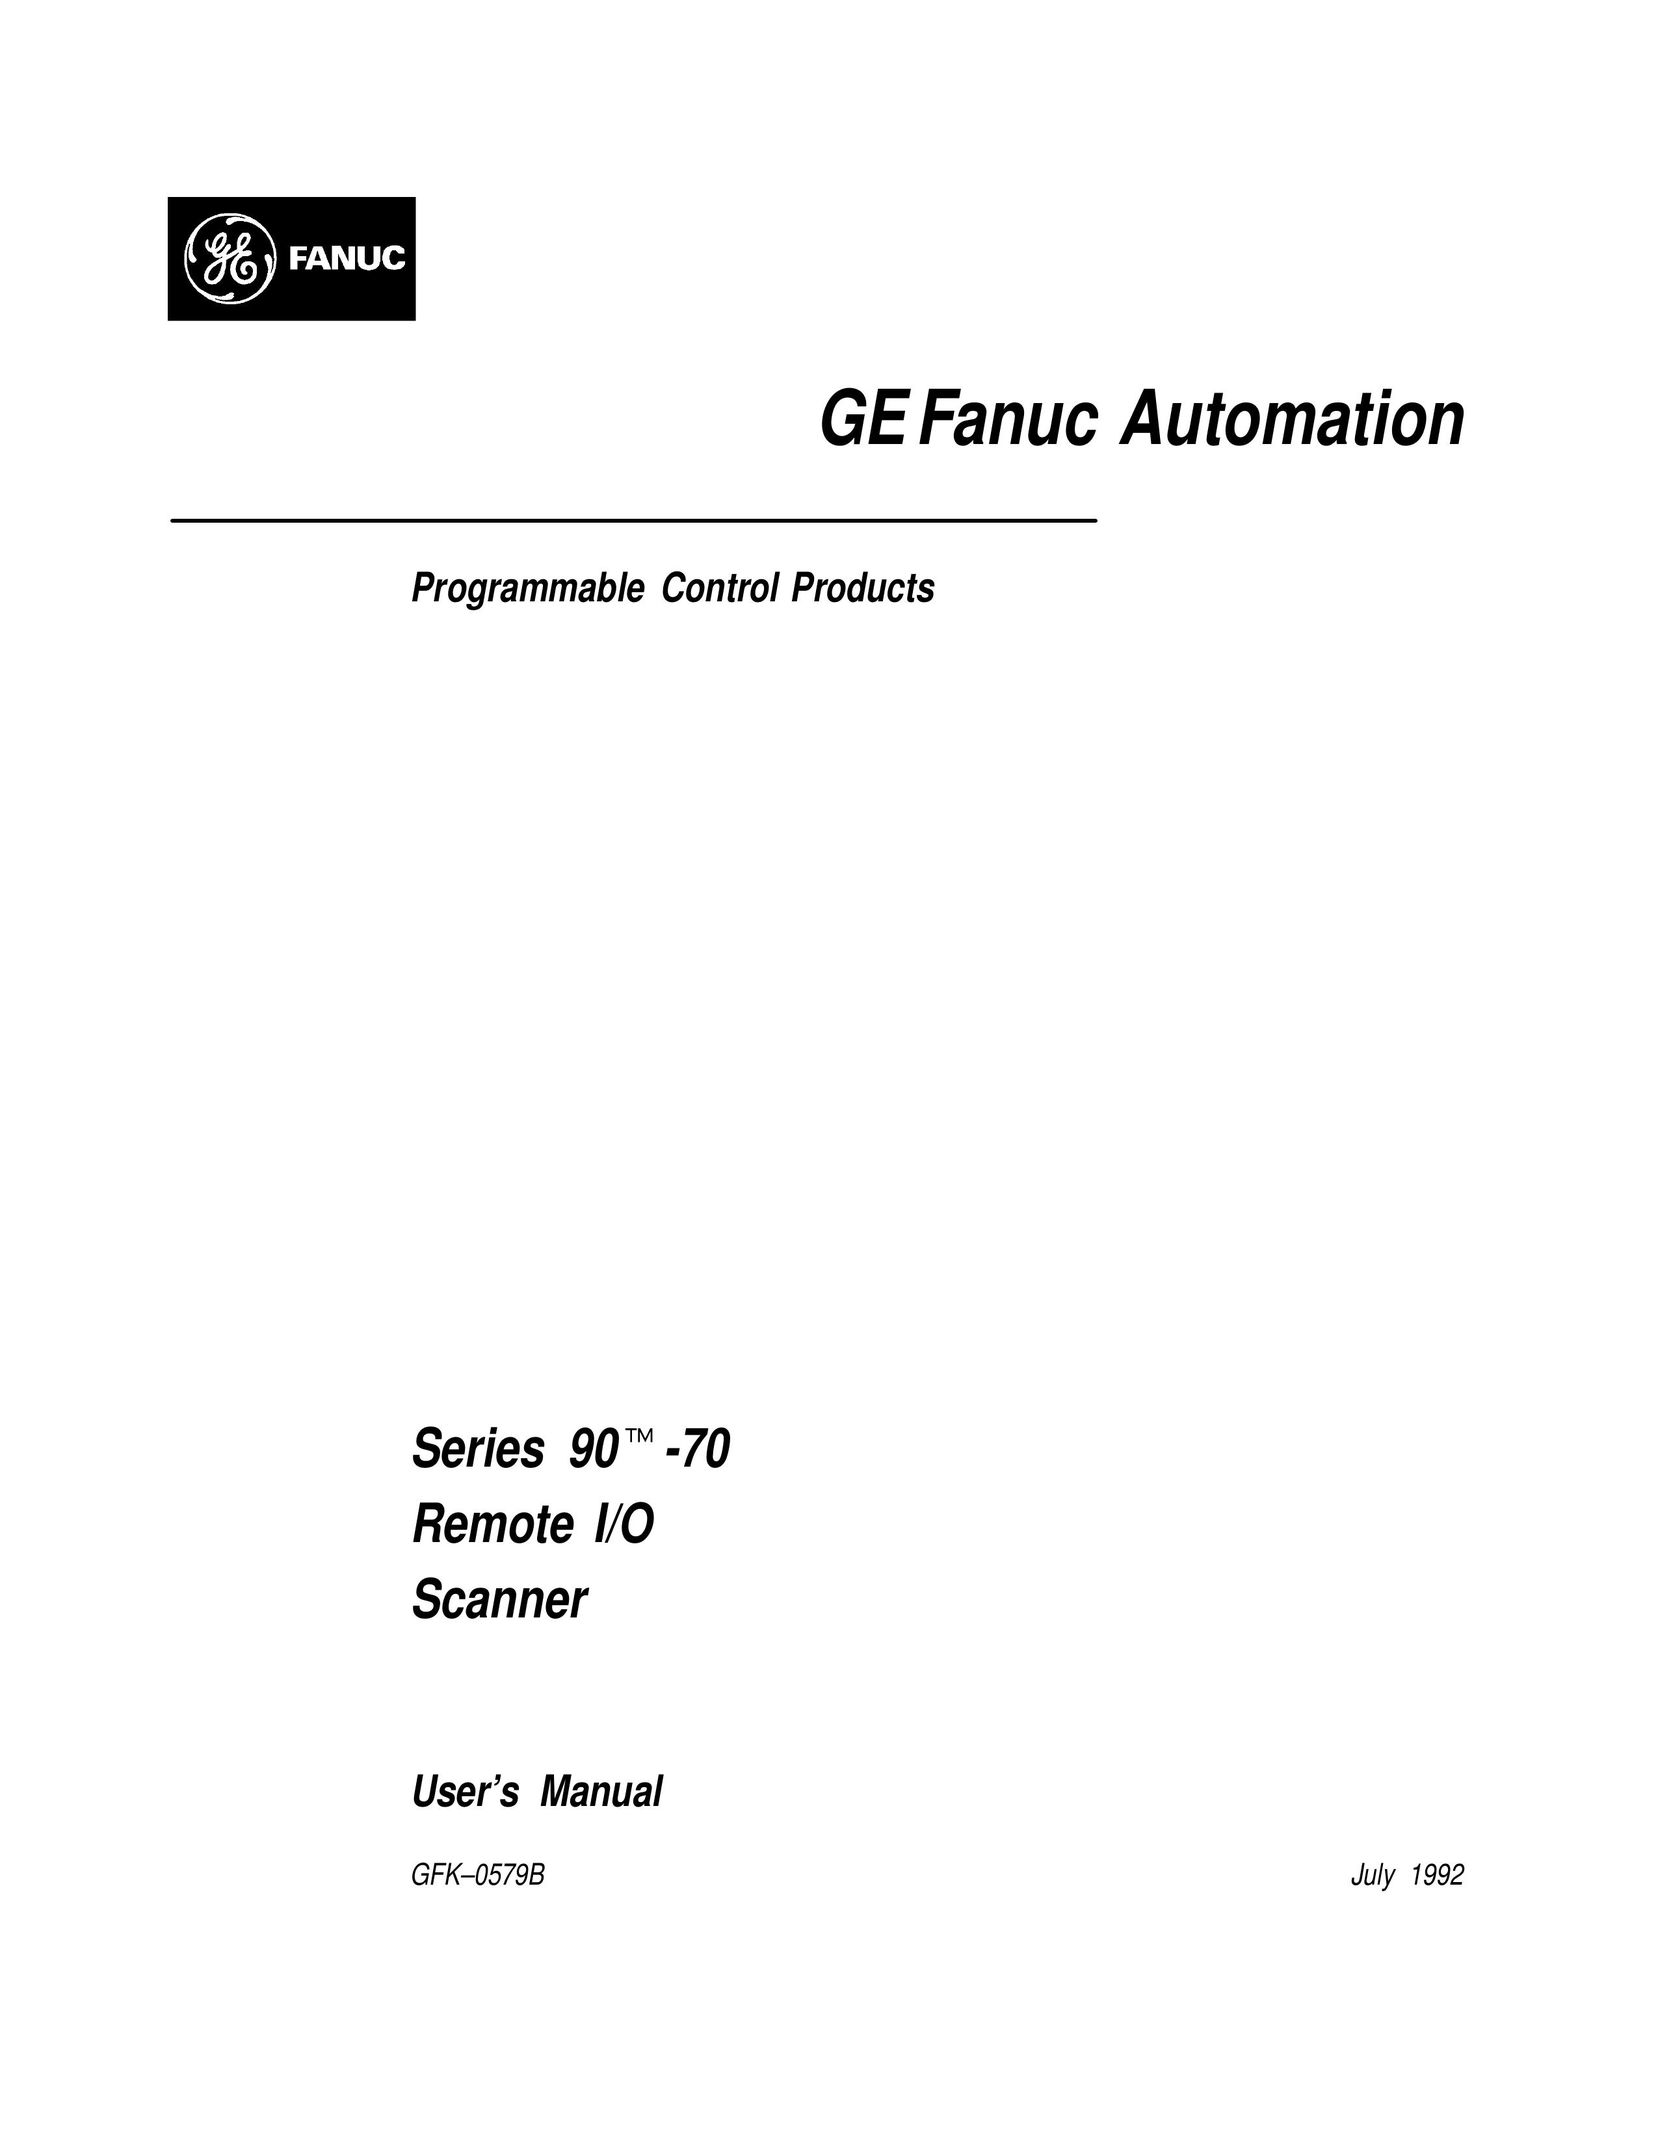 GE GFK0579B Scanner User Manual